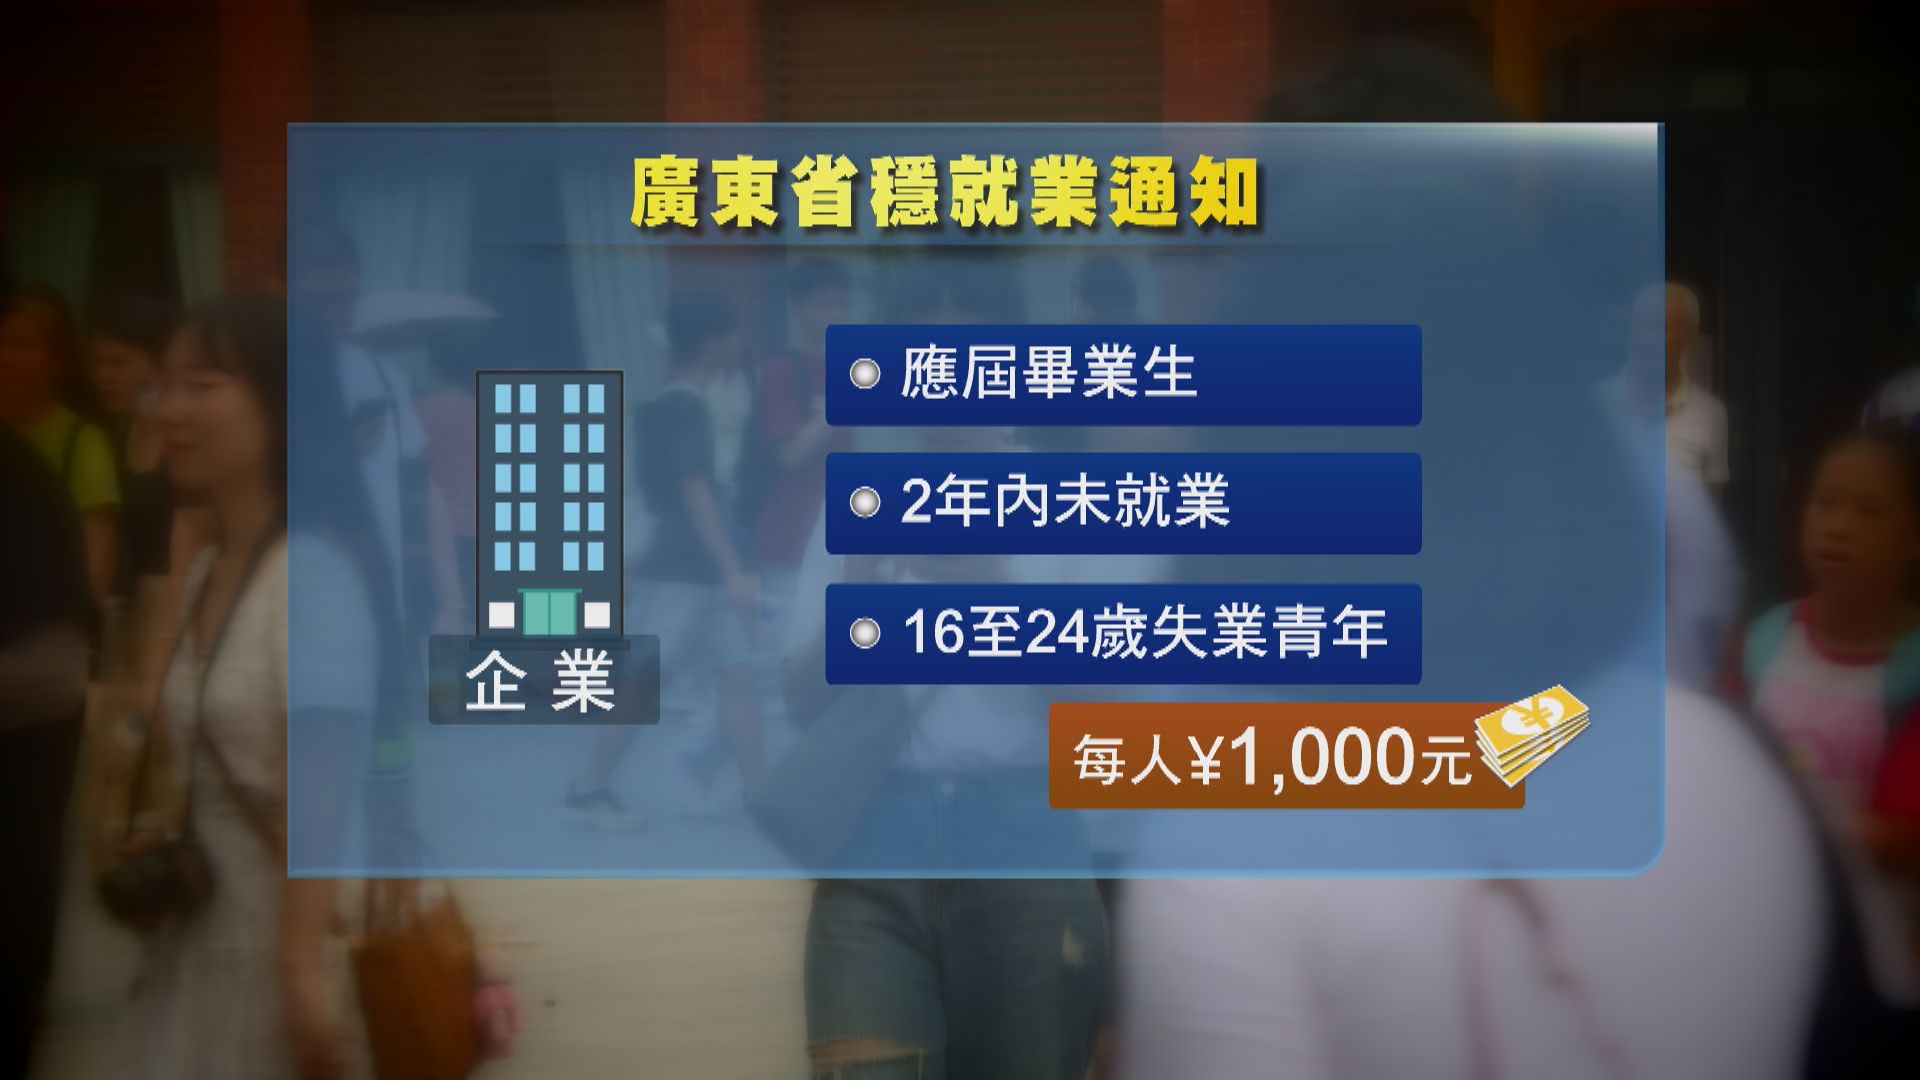 廣東省穩就業措施 企業聘用畢業生每人獲千元補助